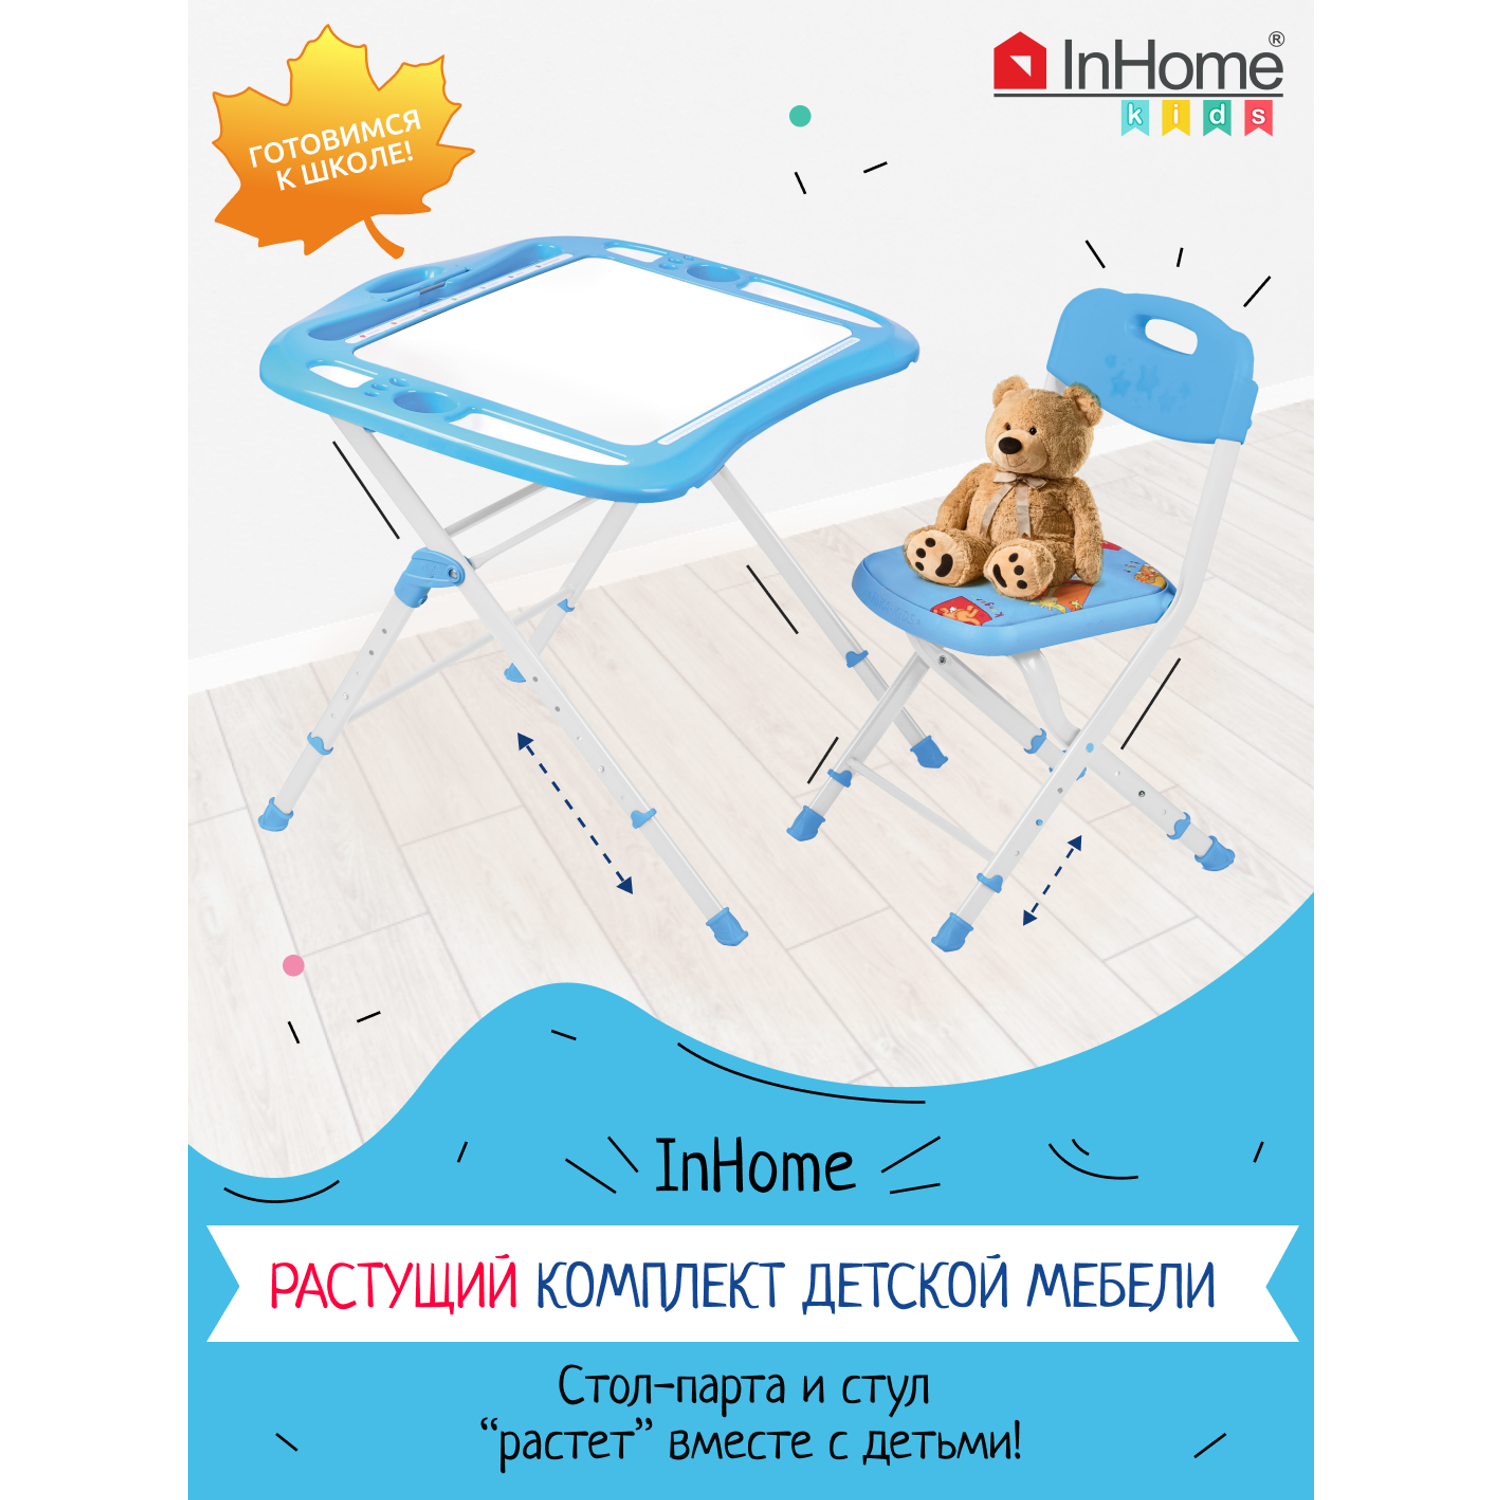 Комплект детской мебели InHome стол-парта и мягкий стульчик - фото 1